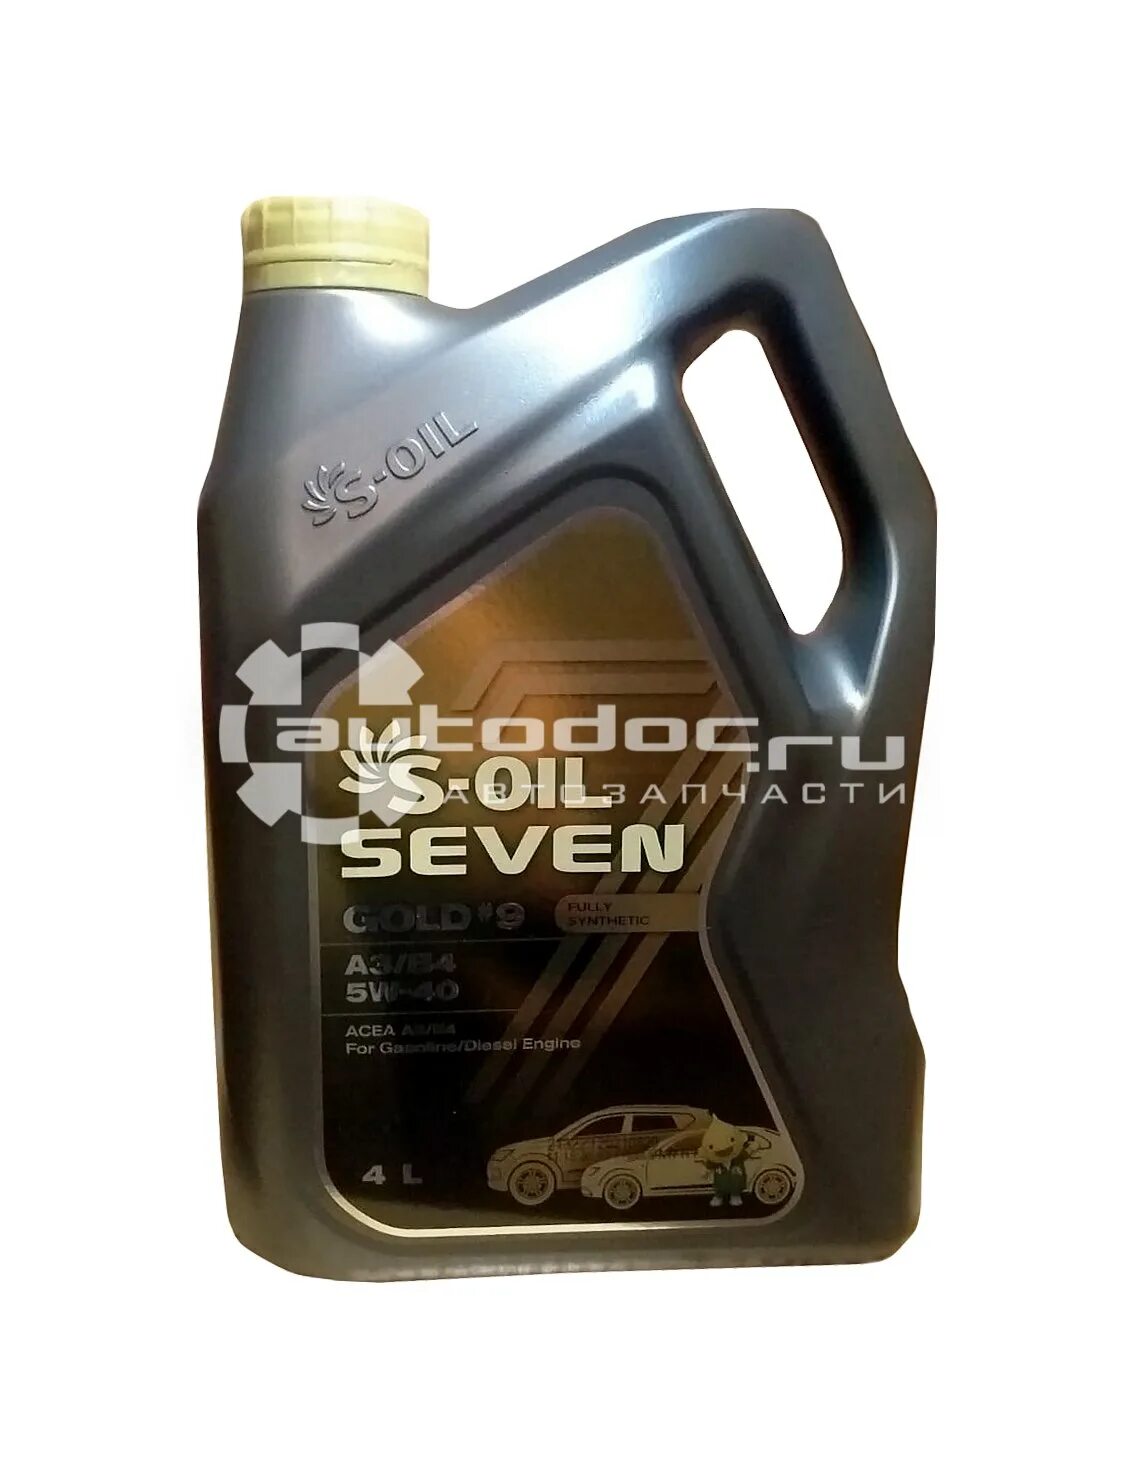 S-Oil 7 Gold #9 a3/b4 5w40. S-Oil Seven 5w-30 Gold 9. S Oil Seven 5w40 Голд 9. S-Oil Seven Gold 9 5w 40.